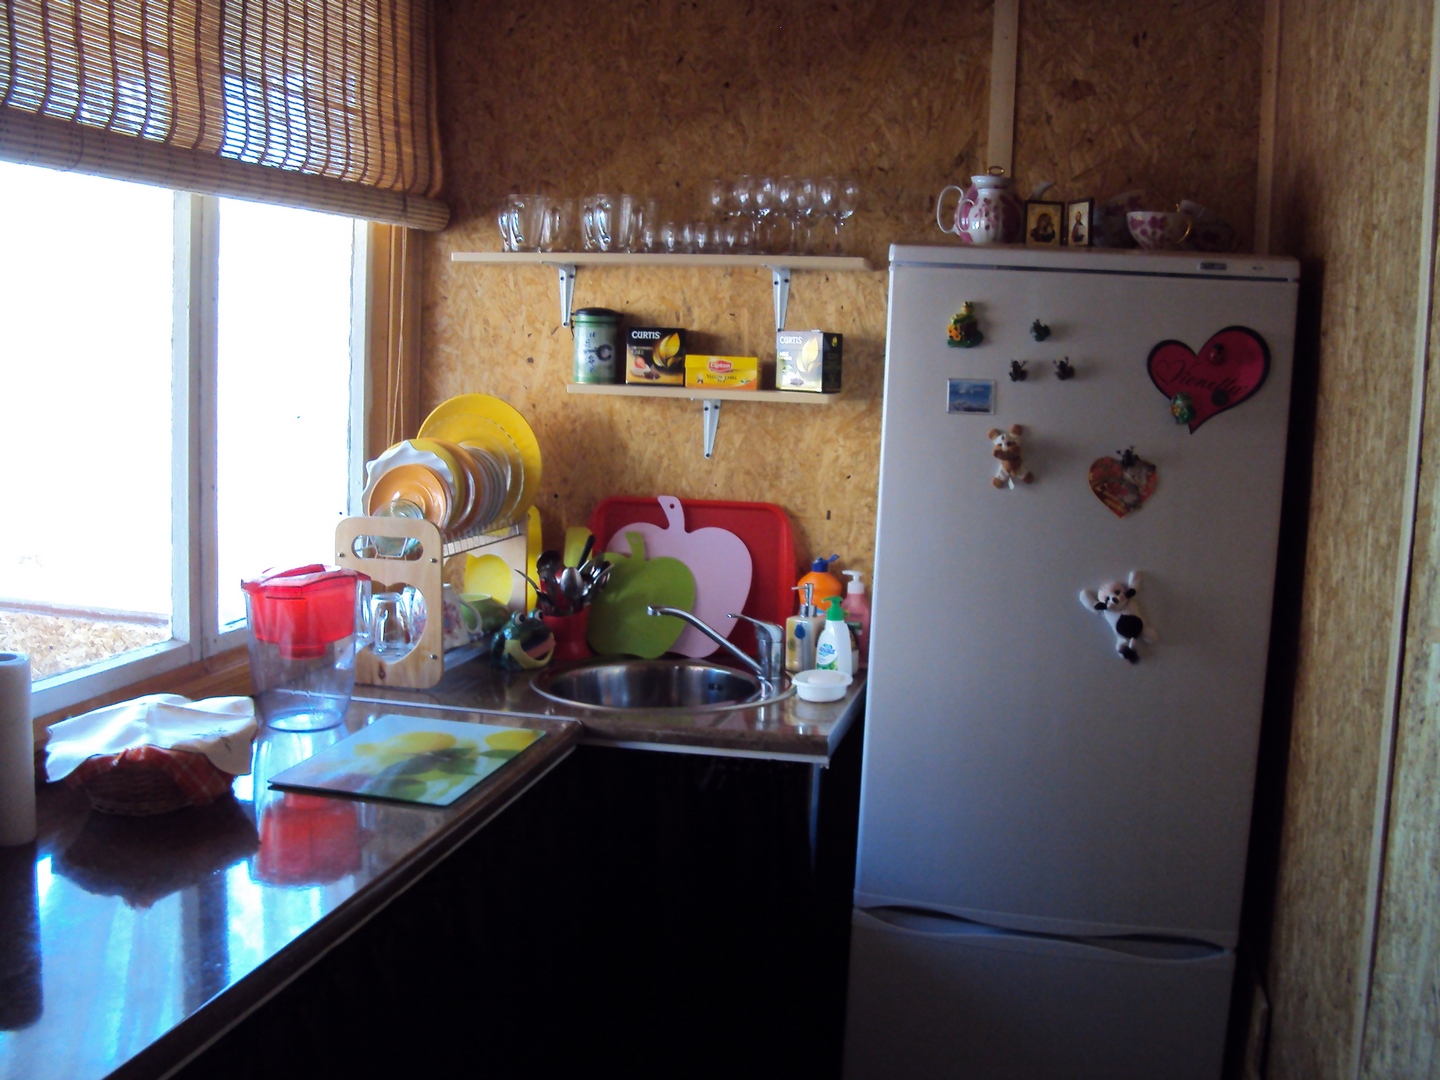 Дом № 4 за Садко 4-х местный - Limpopo Travel в Казахстане